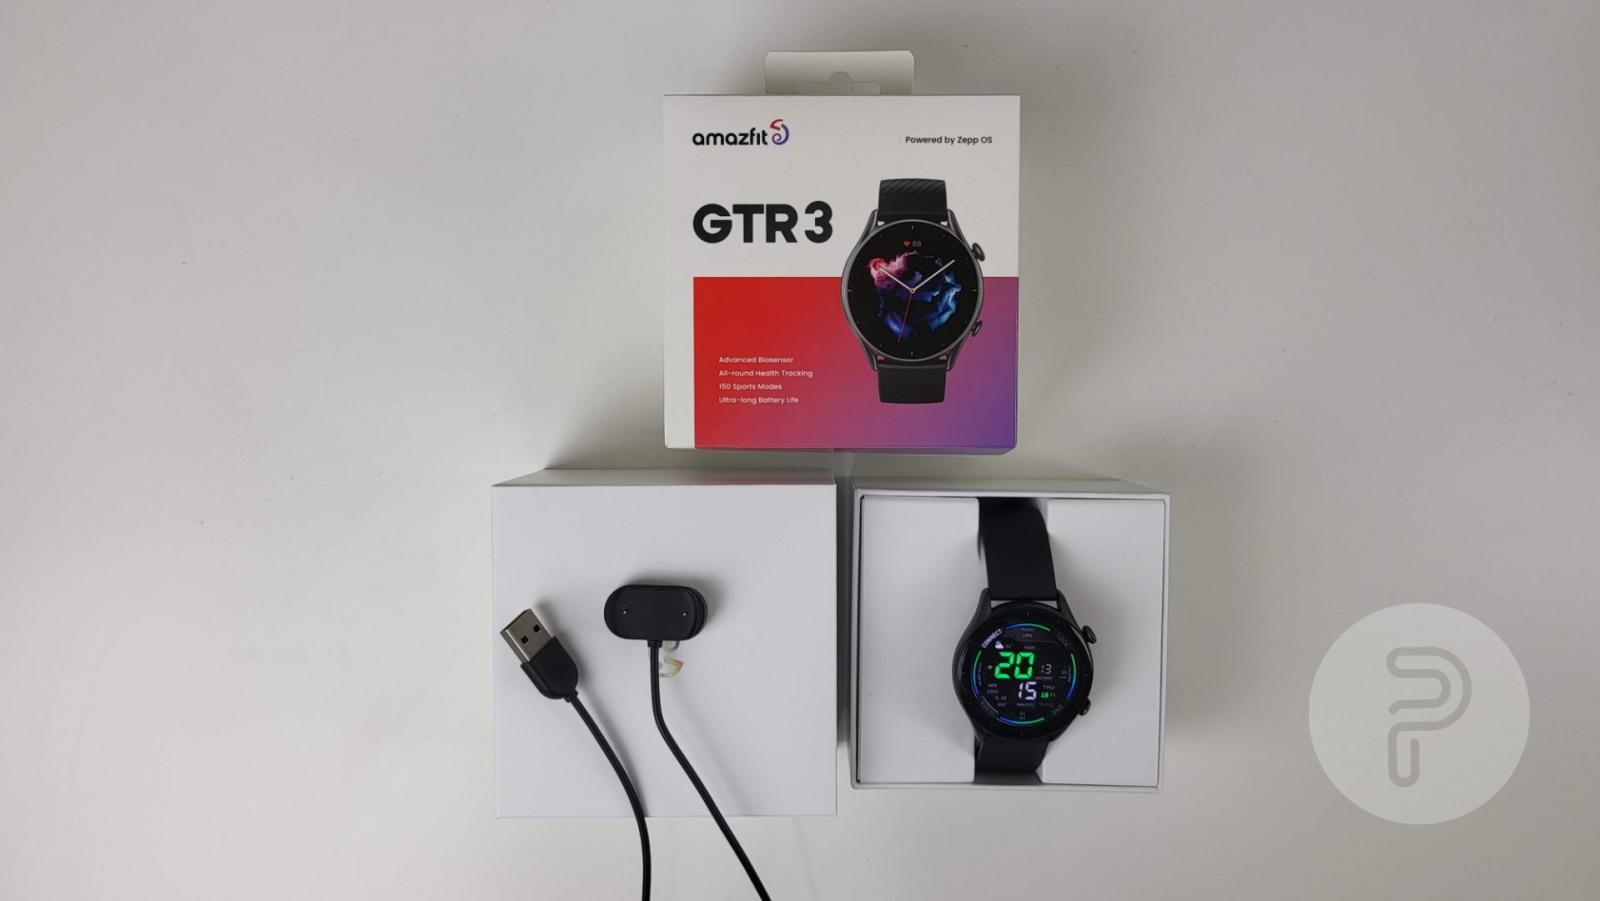 Amazfit GTR 3 Smartwatch Box contents